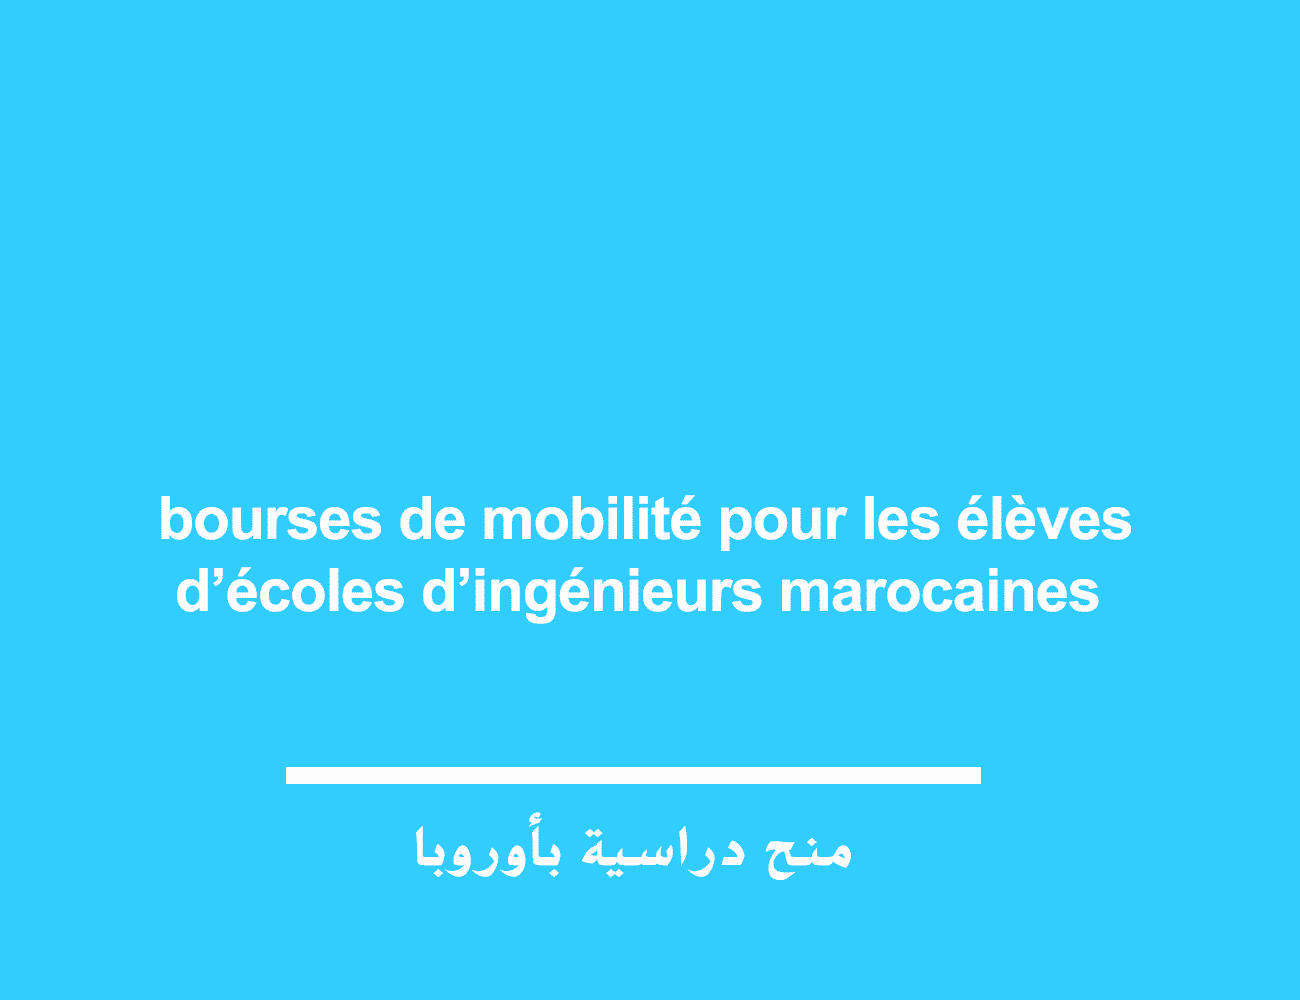 منحة التنقل الفرنسية bourses de mobilité pour les élèves d’écoles d’ingénieurs marocaines